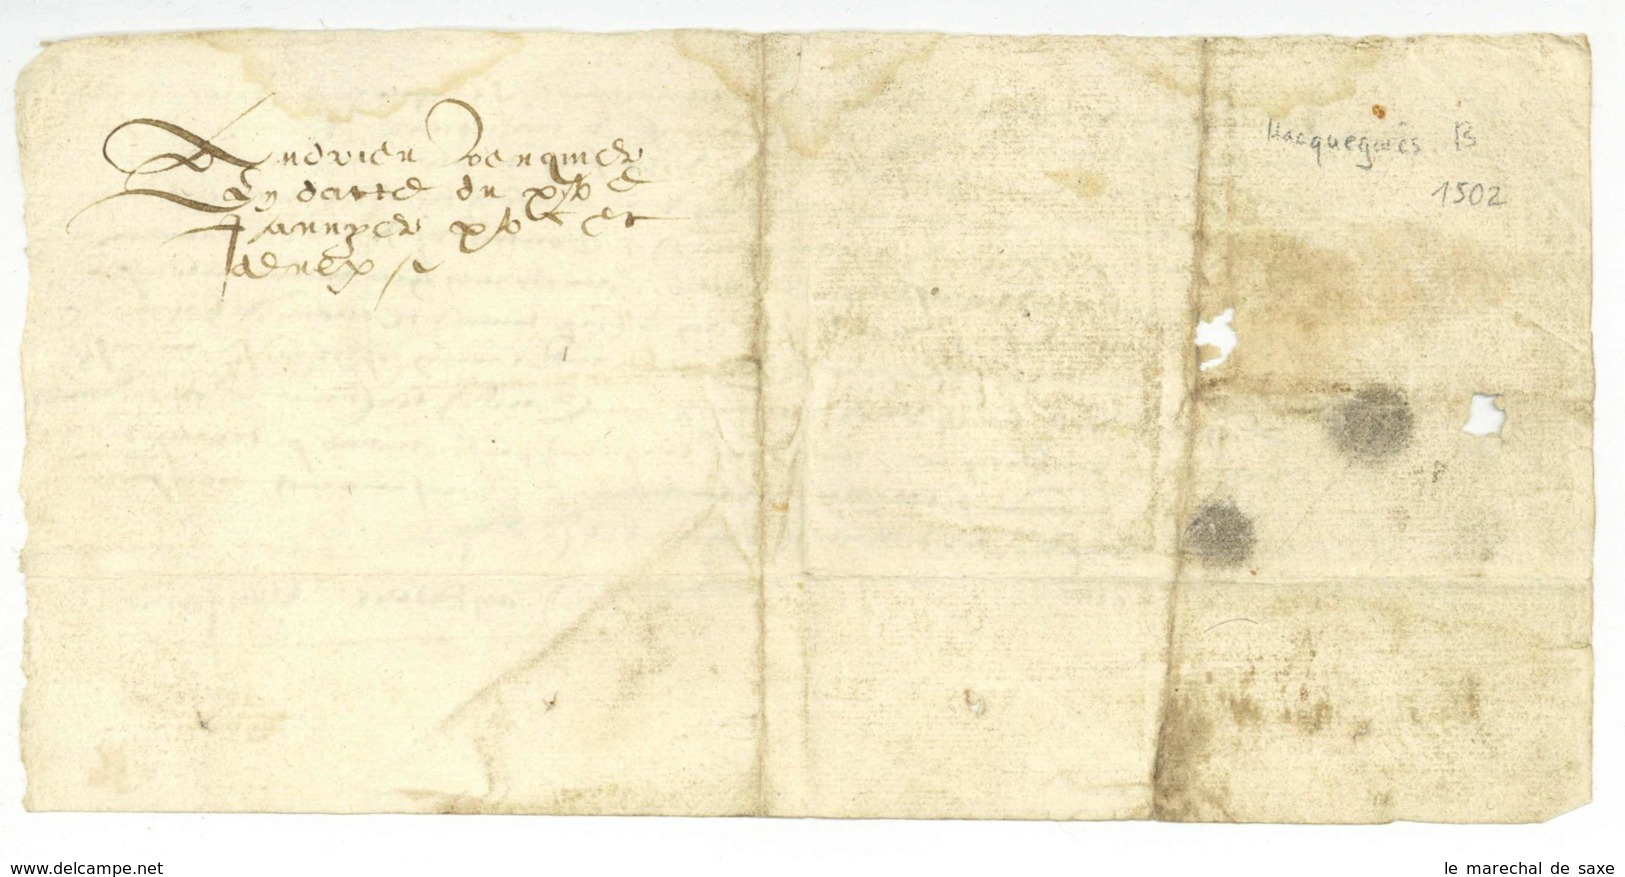 Hacquegnies ATH Belgique 1502 Foy Et Hommage Andrieu Venquiere A M De TRAZEGNIES - Manuskripte